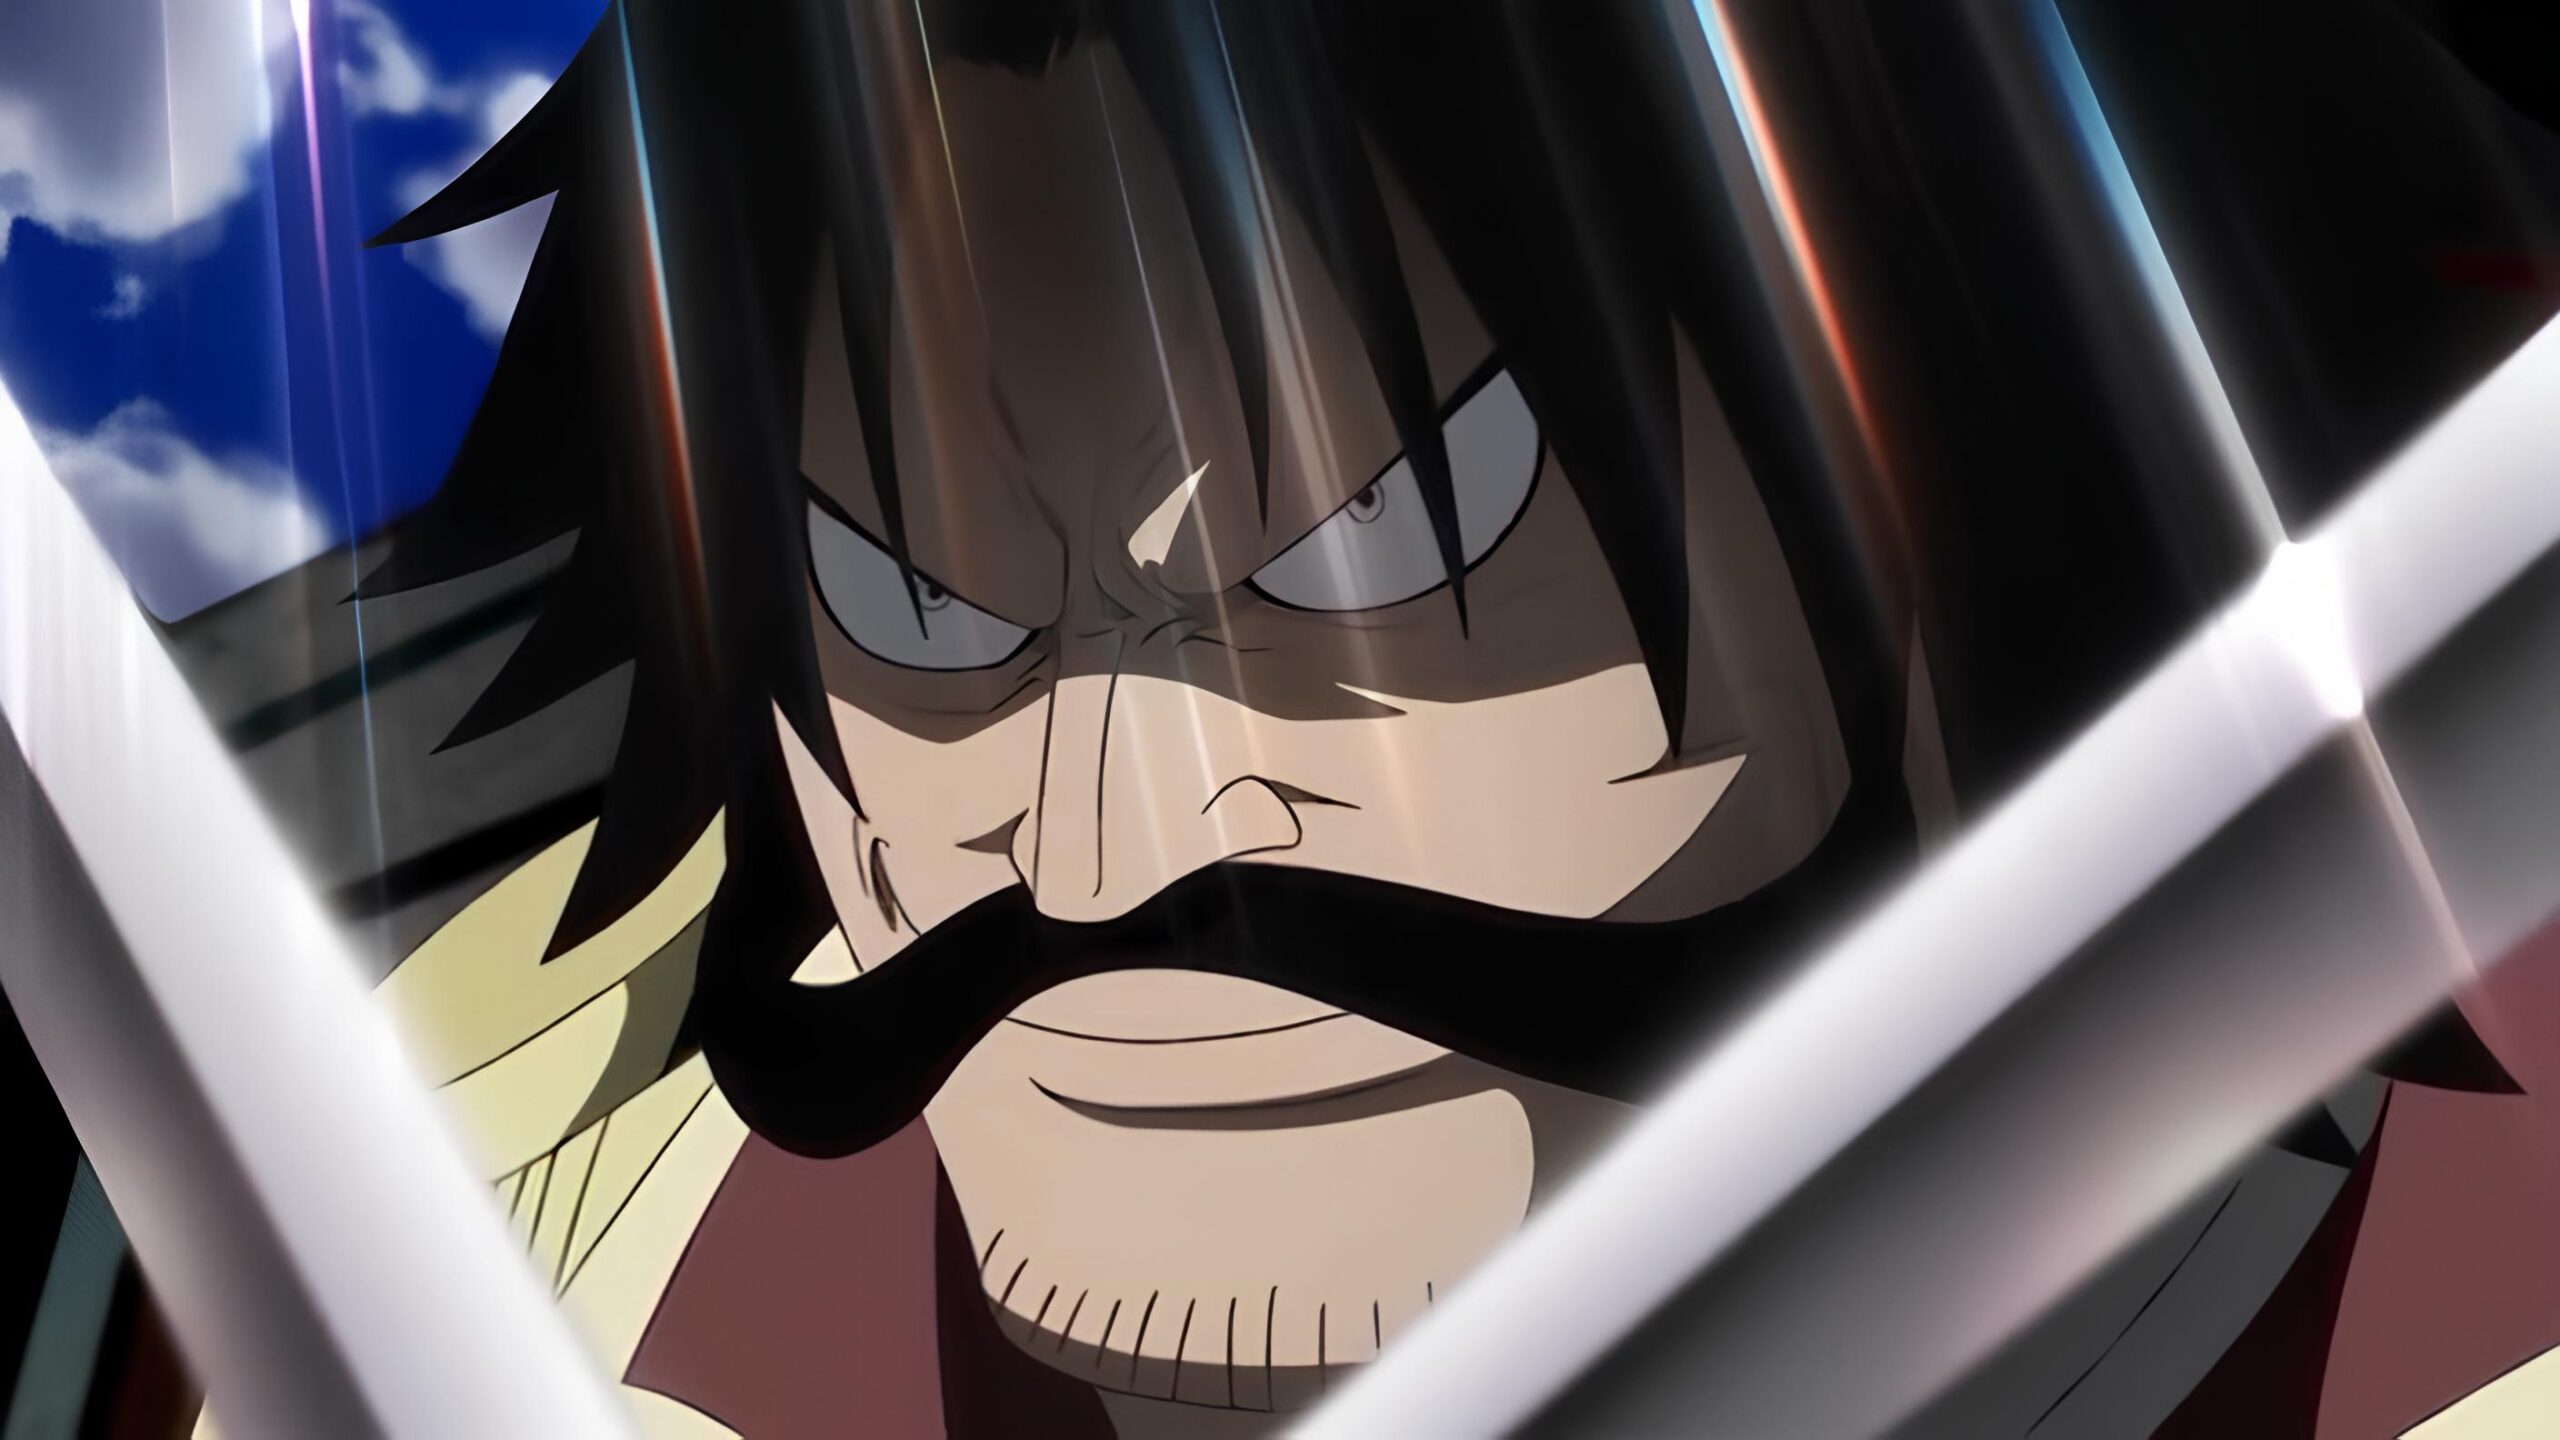 [VIDEO] One Piece Film Strong Word Episodio: 0, sarà disponibile dal 13 ottobre gratis su YouTube